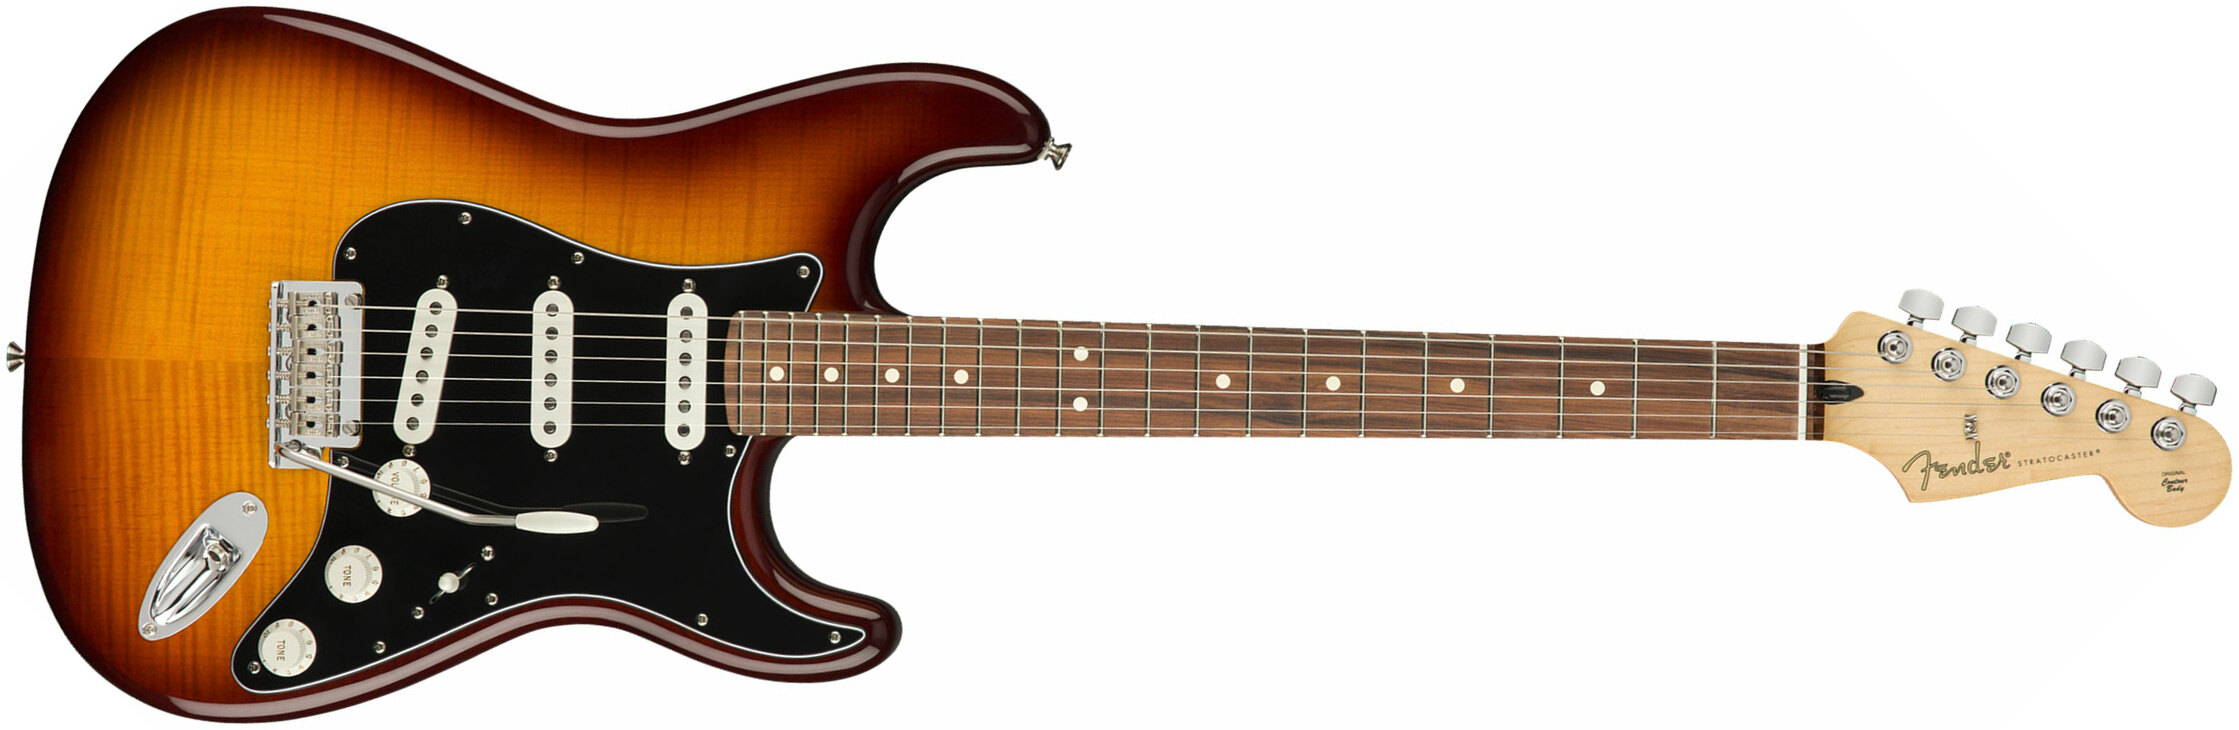 Fender Strat Player Plus Top Mex 3s Trem Pf - Tobacco Burst - Guitarra eléctrica con forma de str. - Main picture